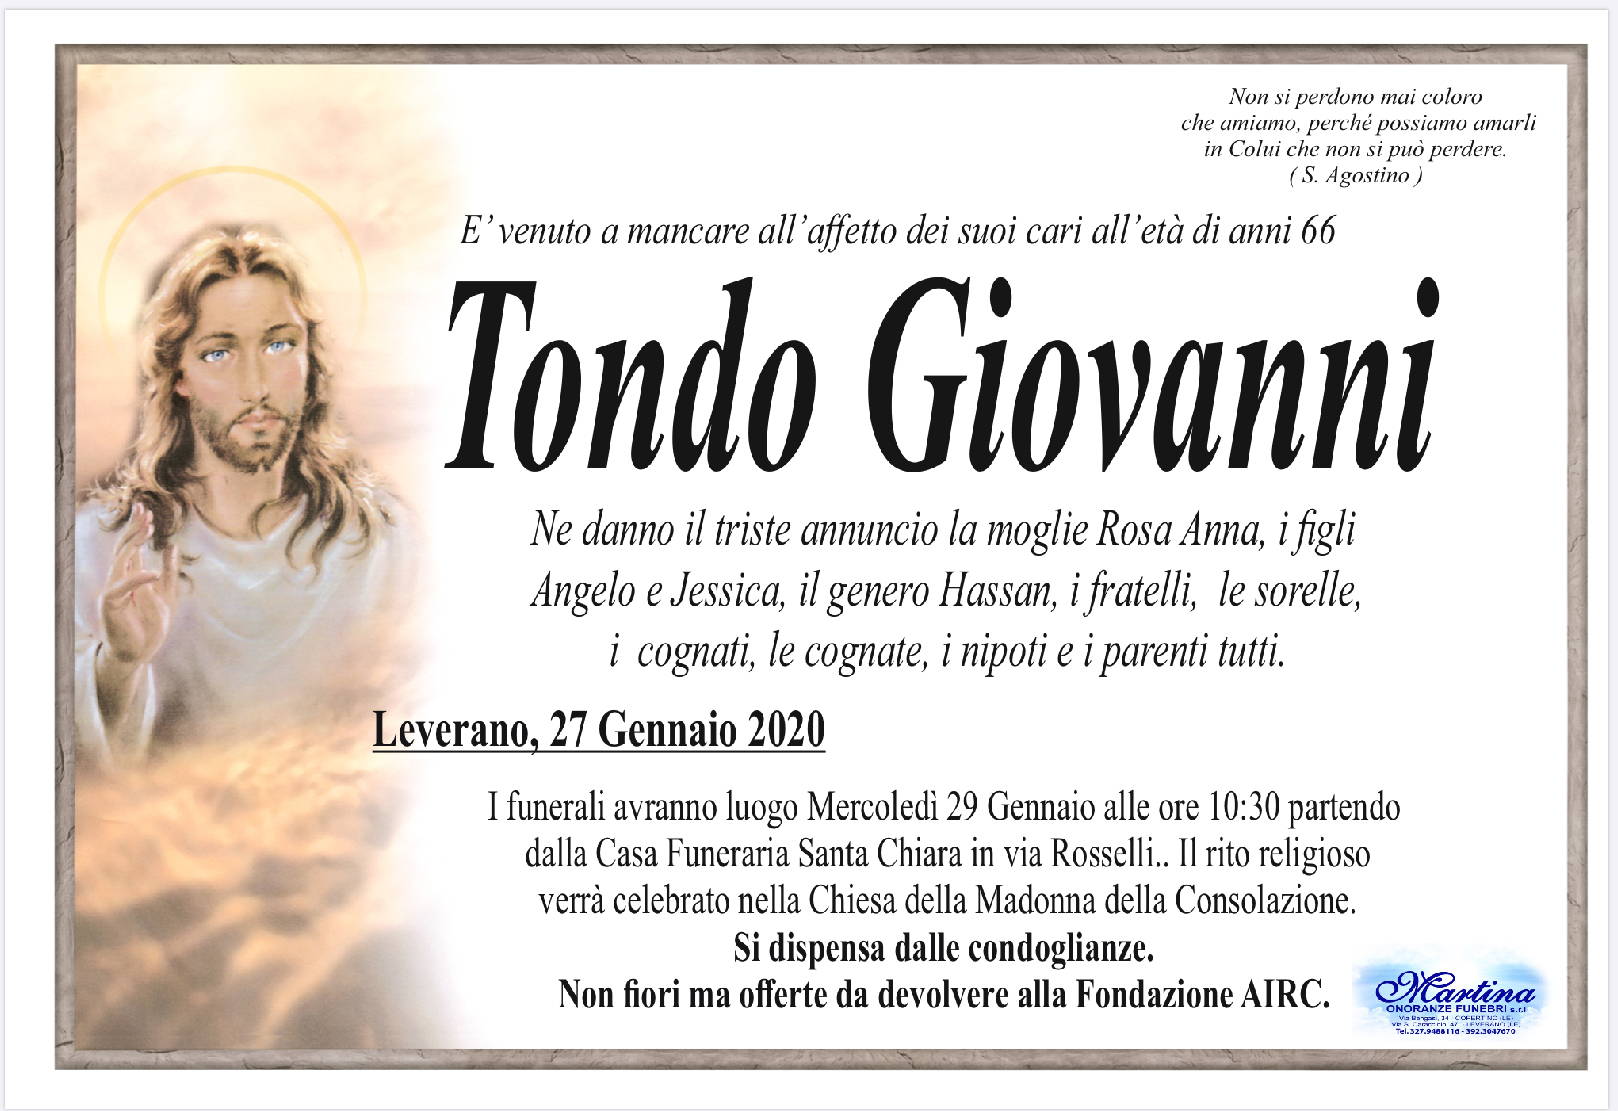 Giovanni Tondo